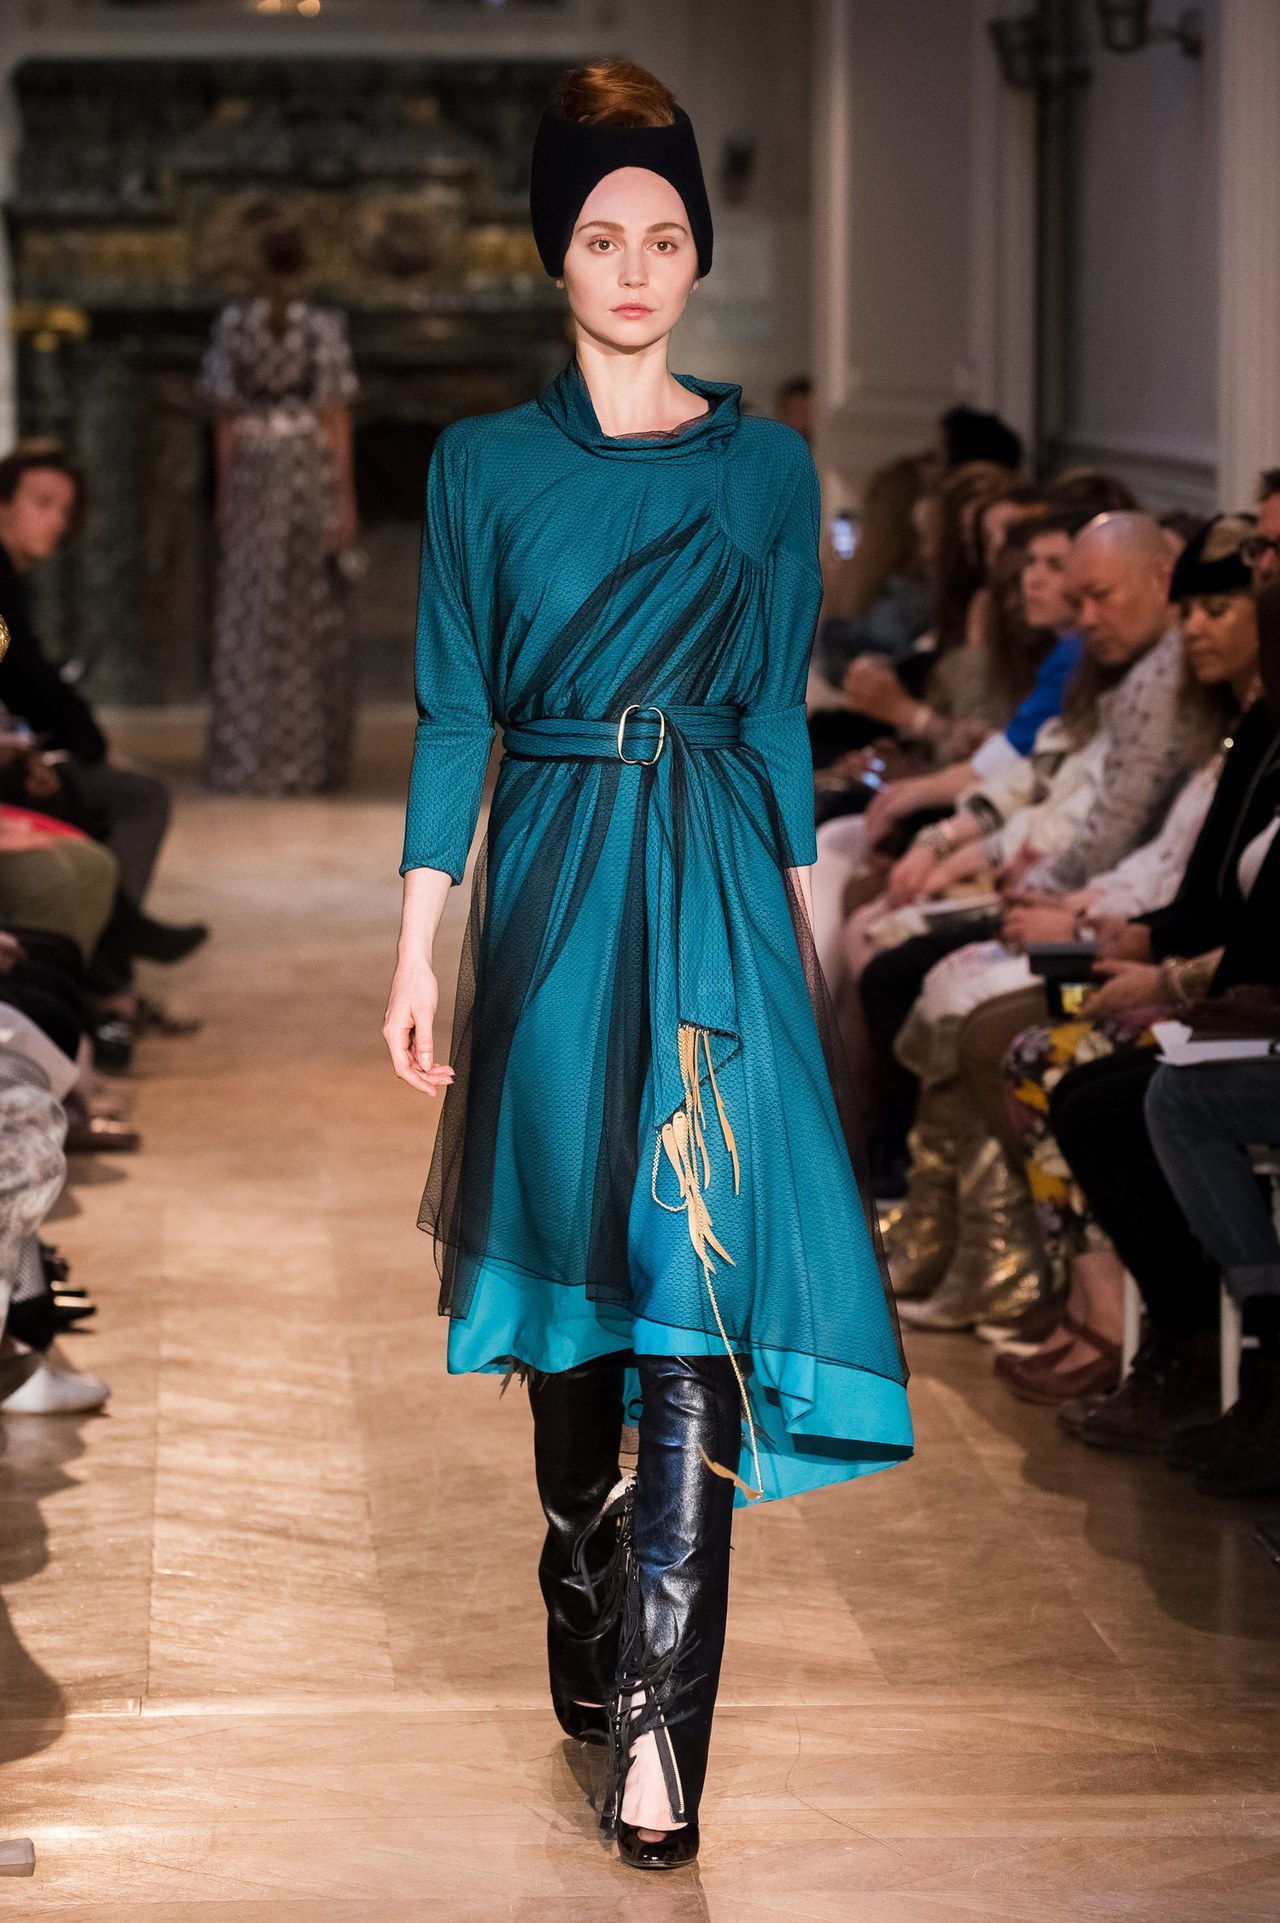 ستيفاني coudert teal tulle dress couture runway 2014